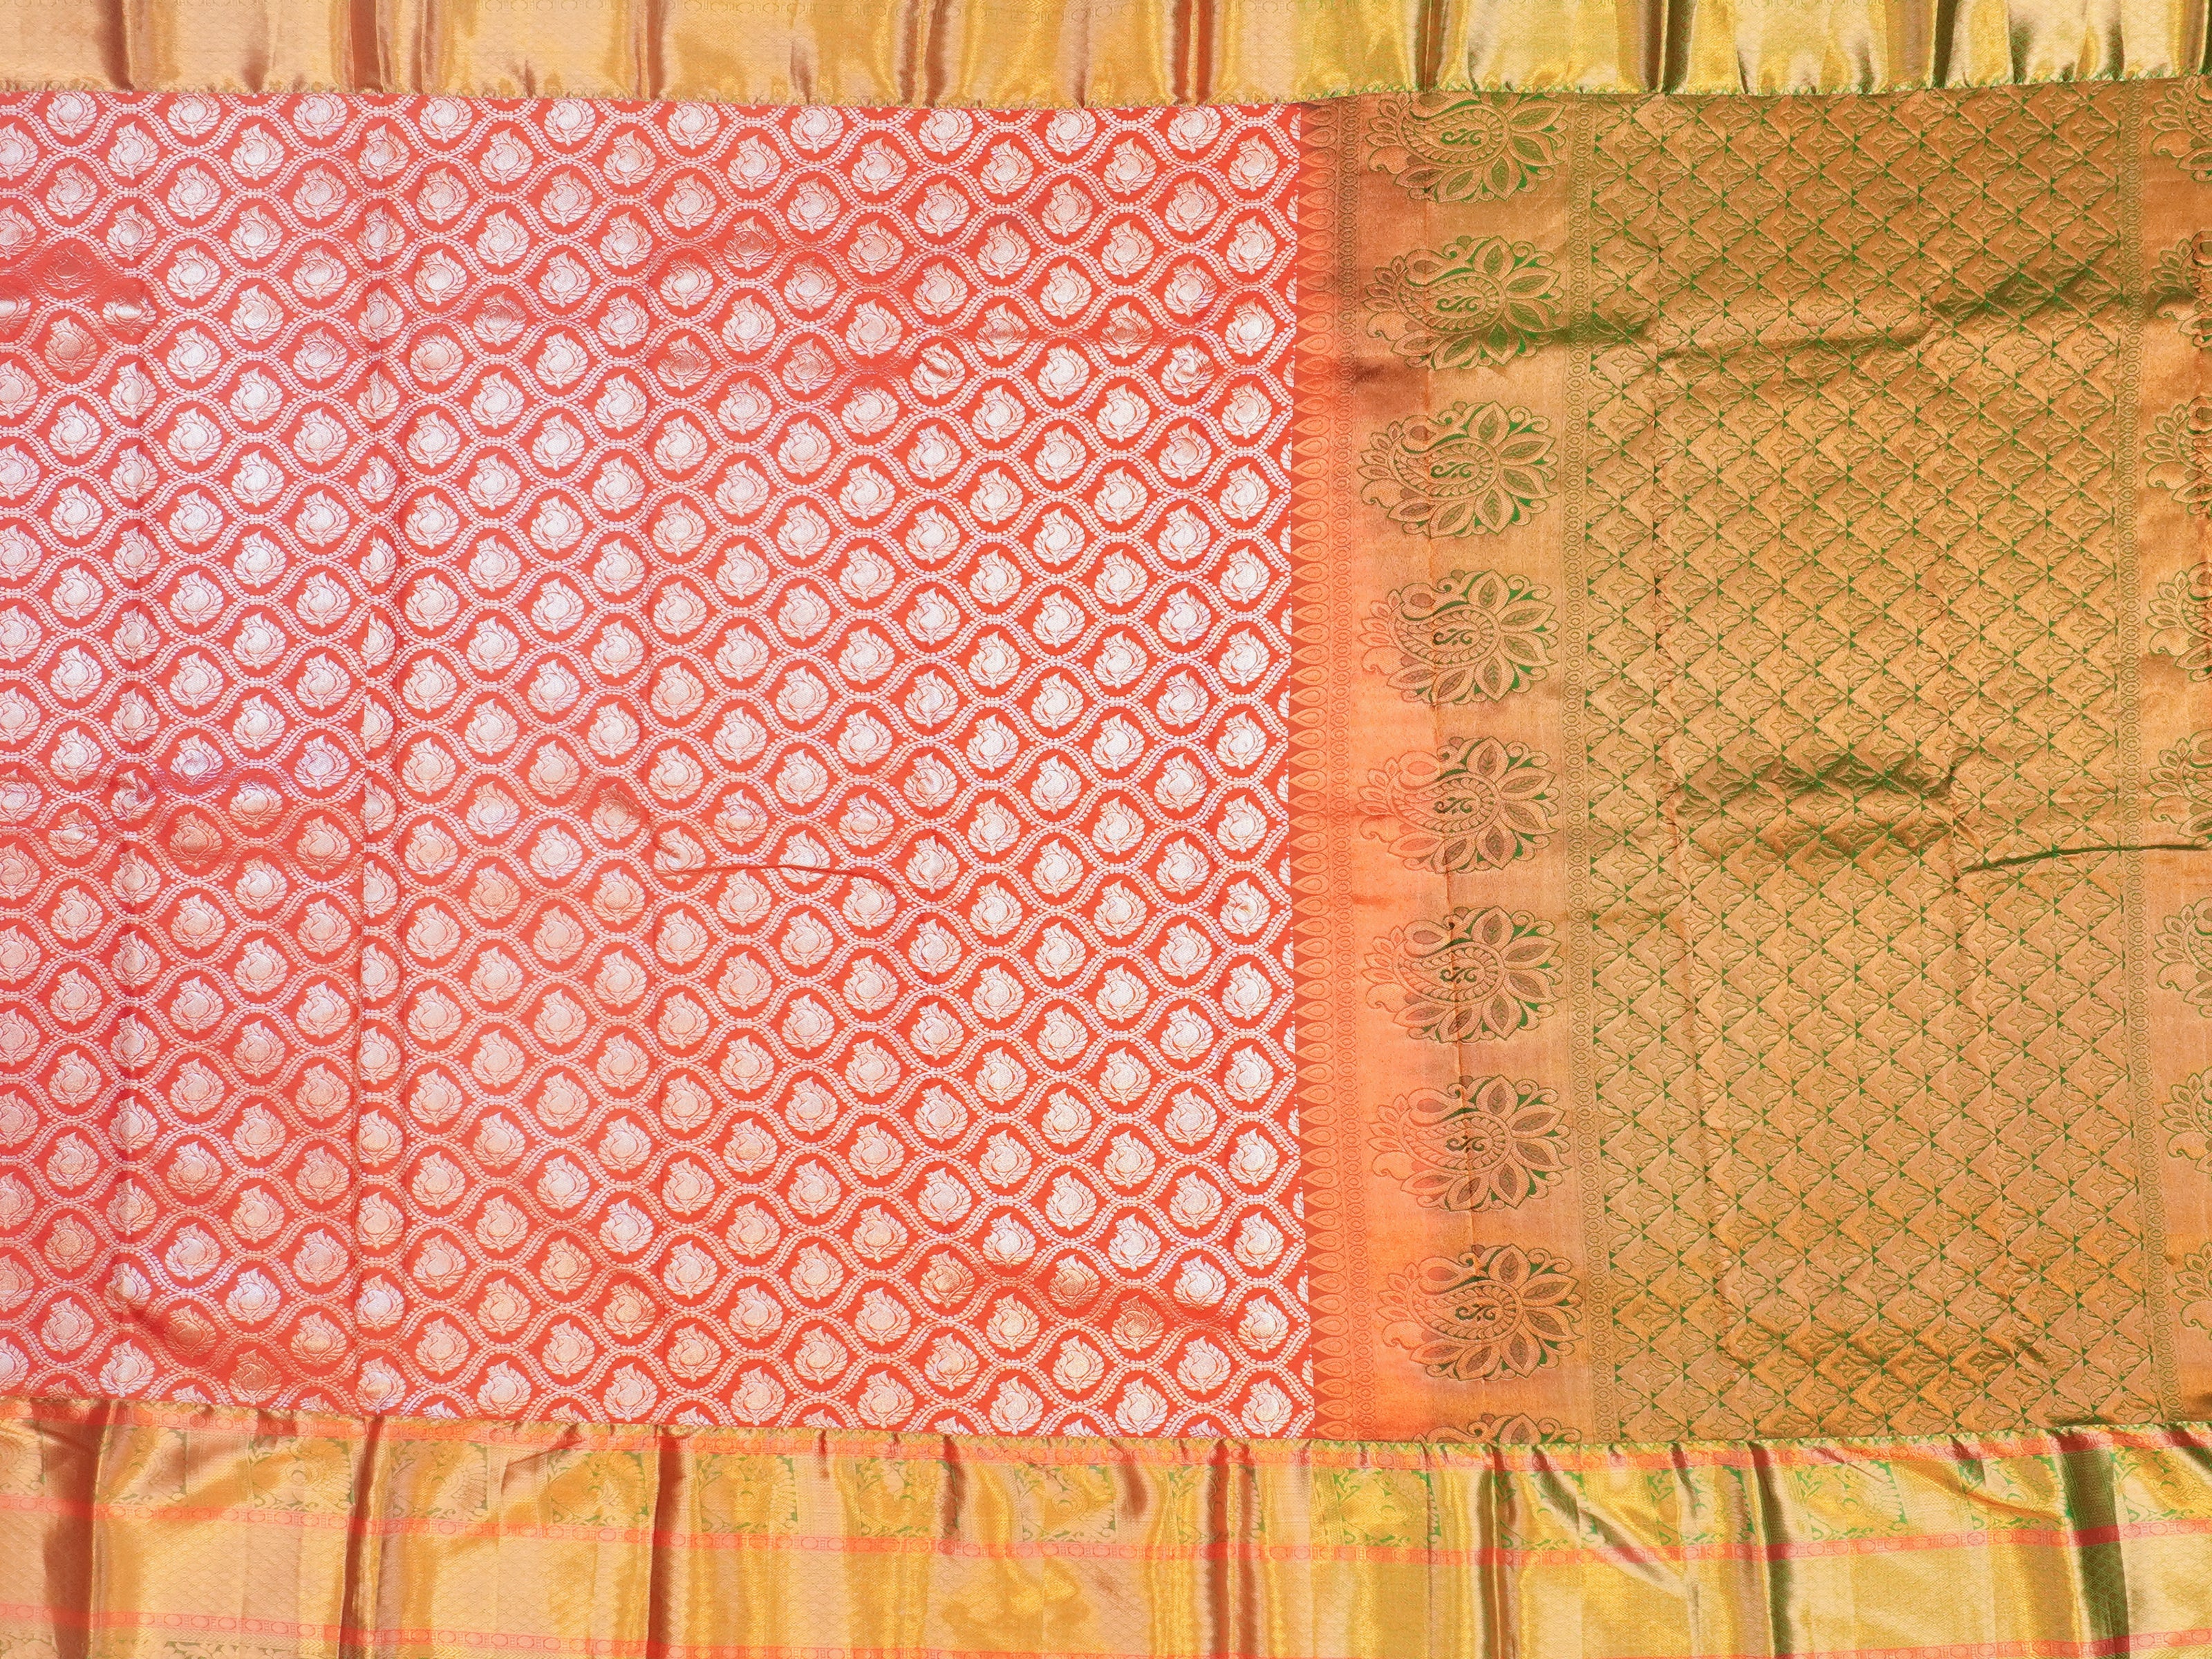 JSSB-397 | Red & Green Pure Kanchi pattu Saree